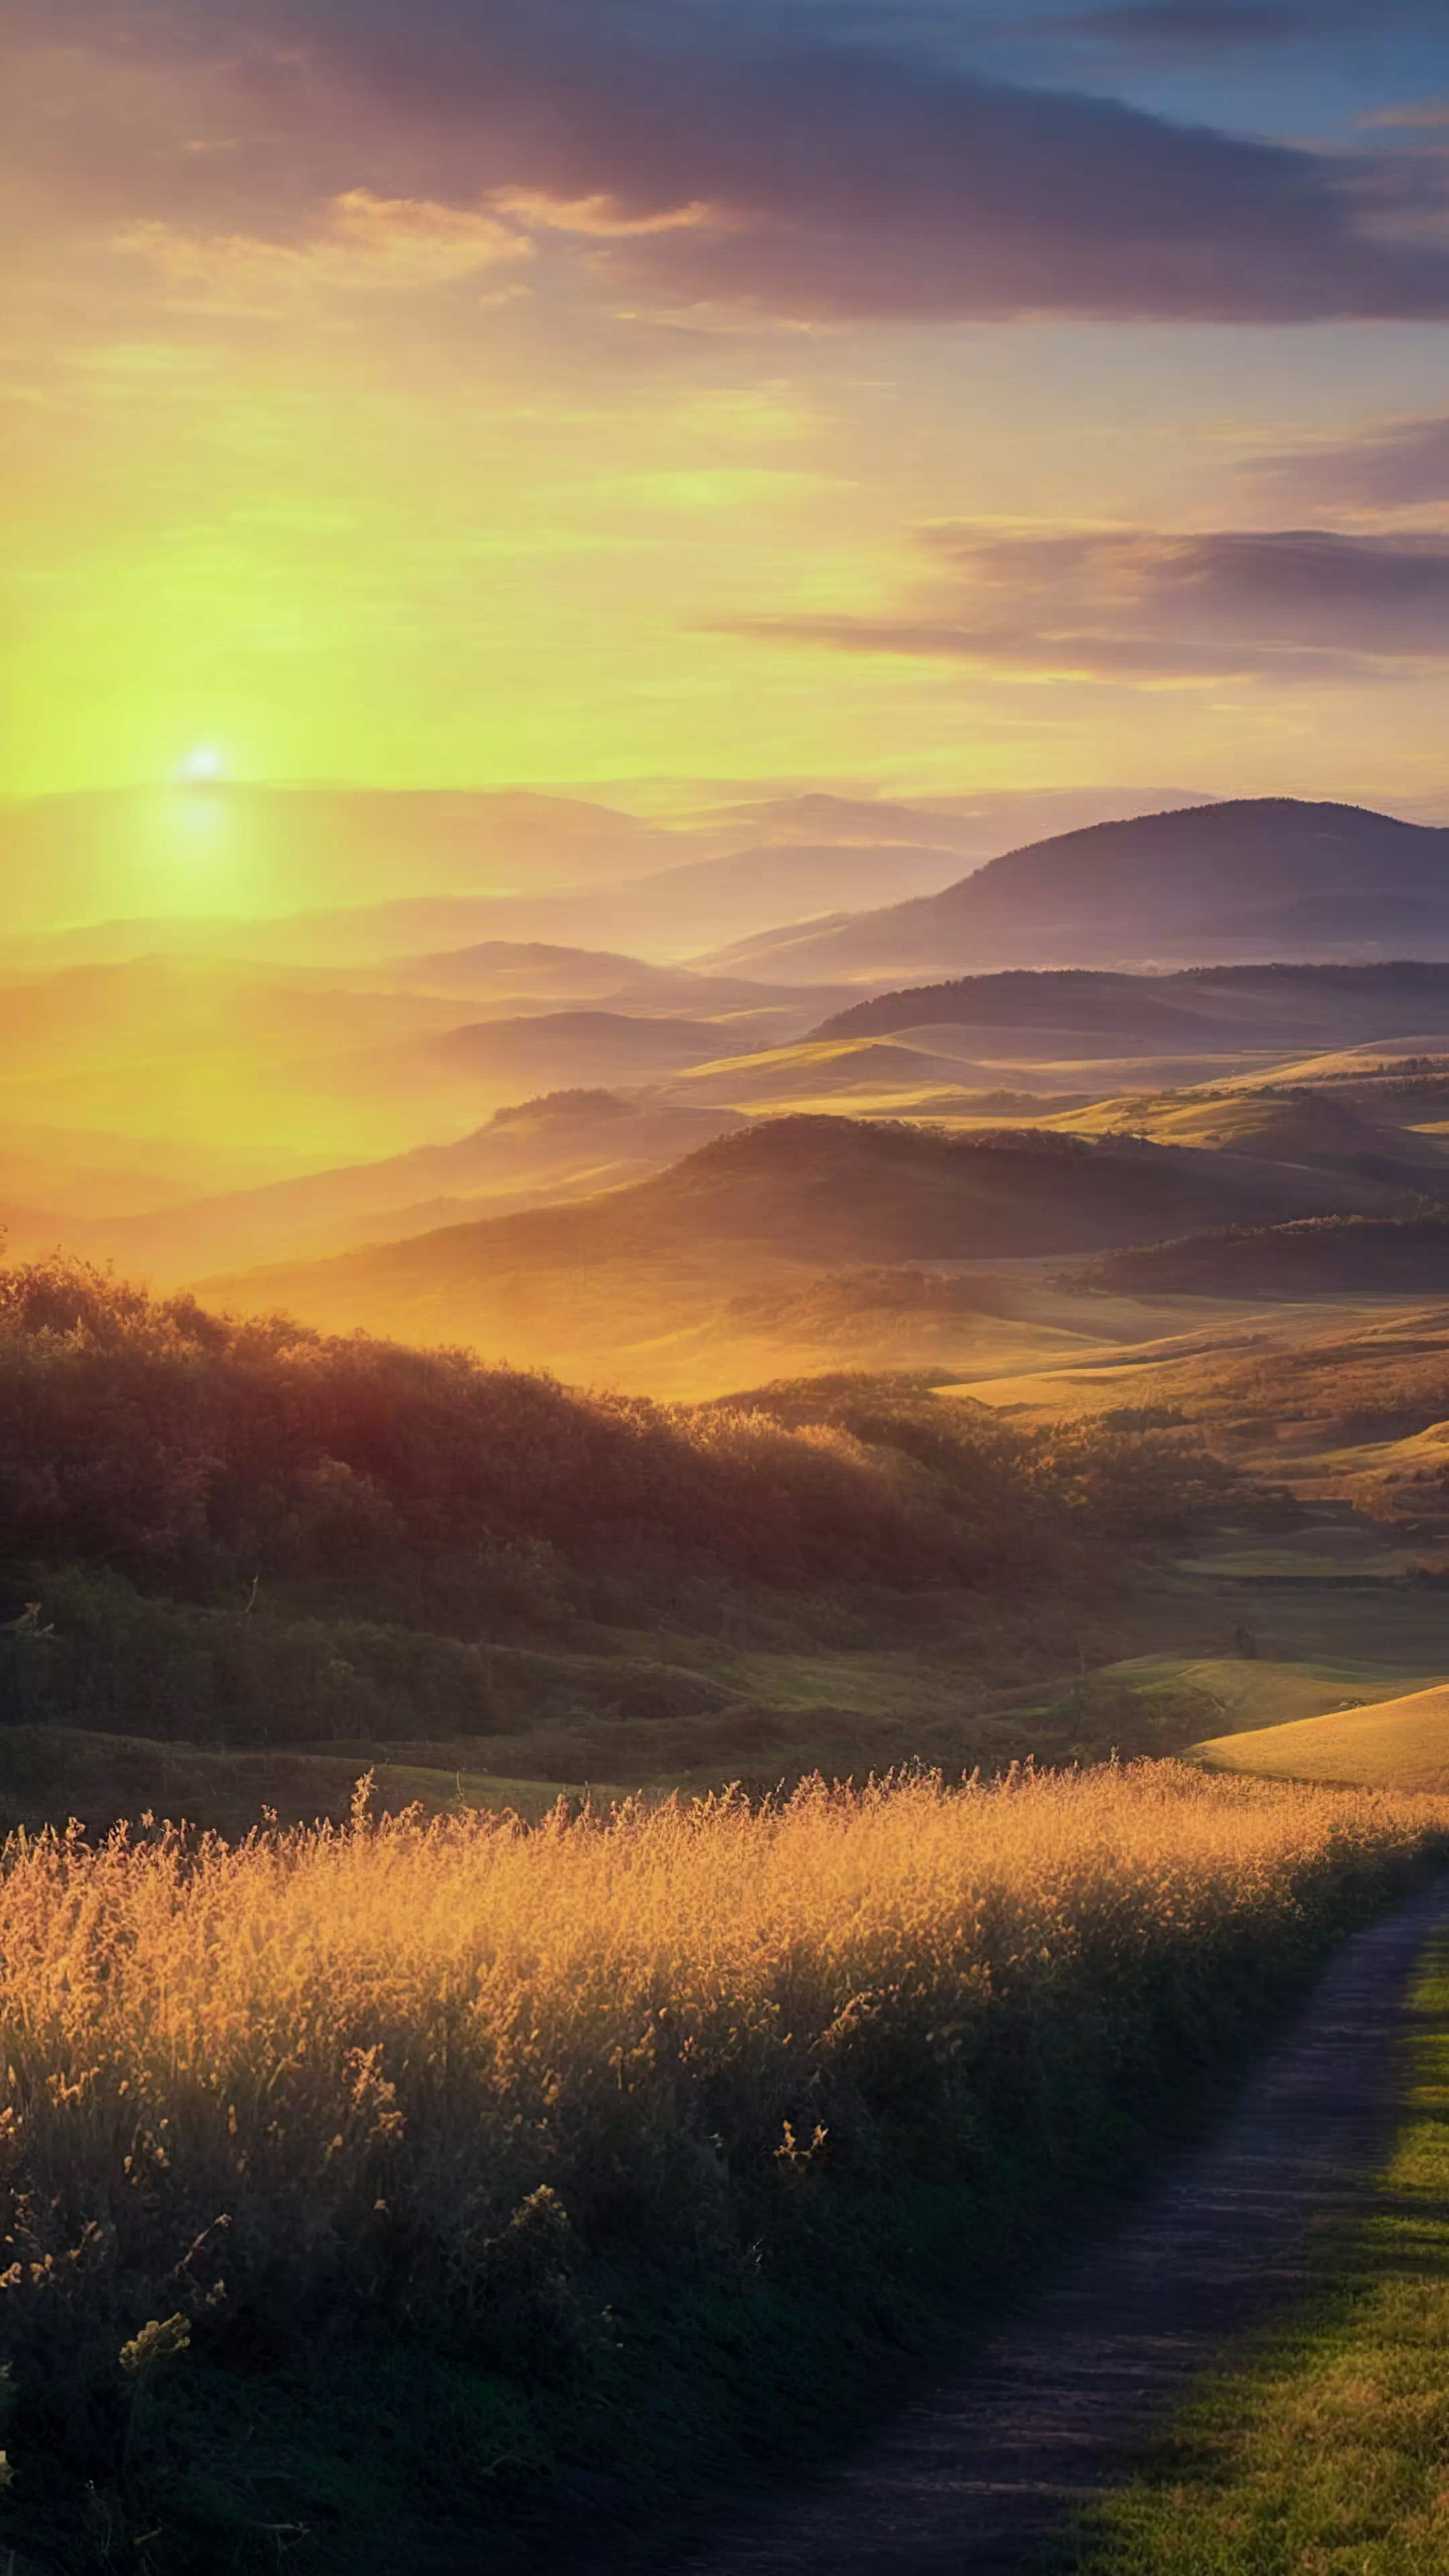 TTransformez l'écran de votre appareil avec notre fond d'écran HD de paysages pour mobile, capturant un lever de soleil sur une campagne avec des collines ondulantes baignées d'une lueur dorée, et laissez votre appareil devenir un portail vers un matin serein à la campagne.